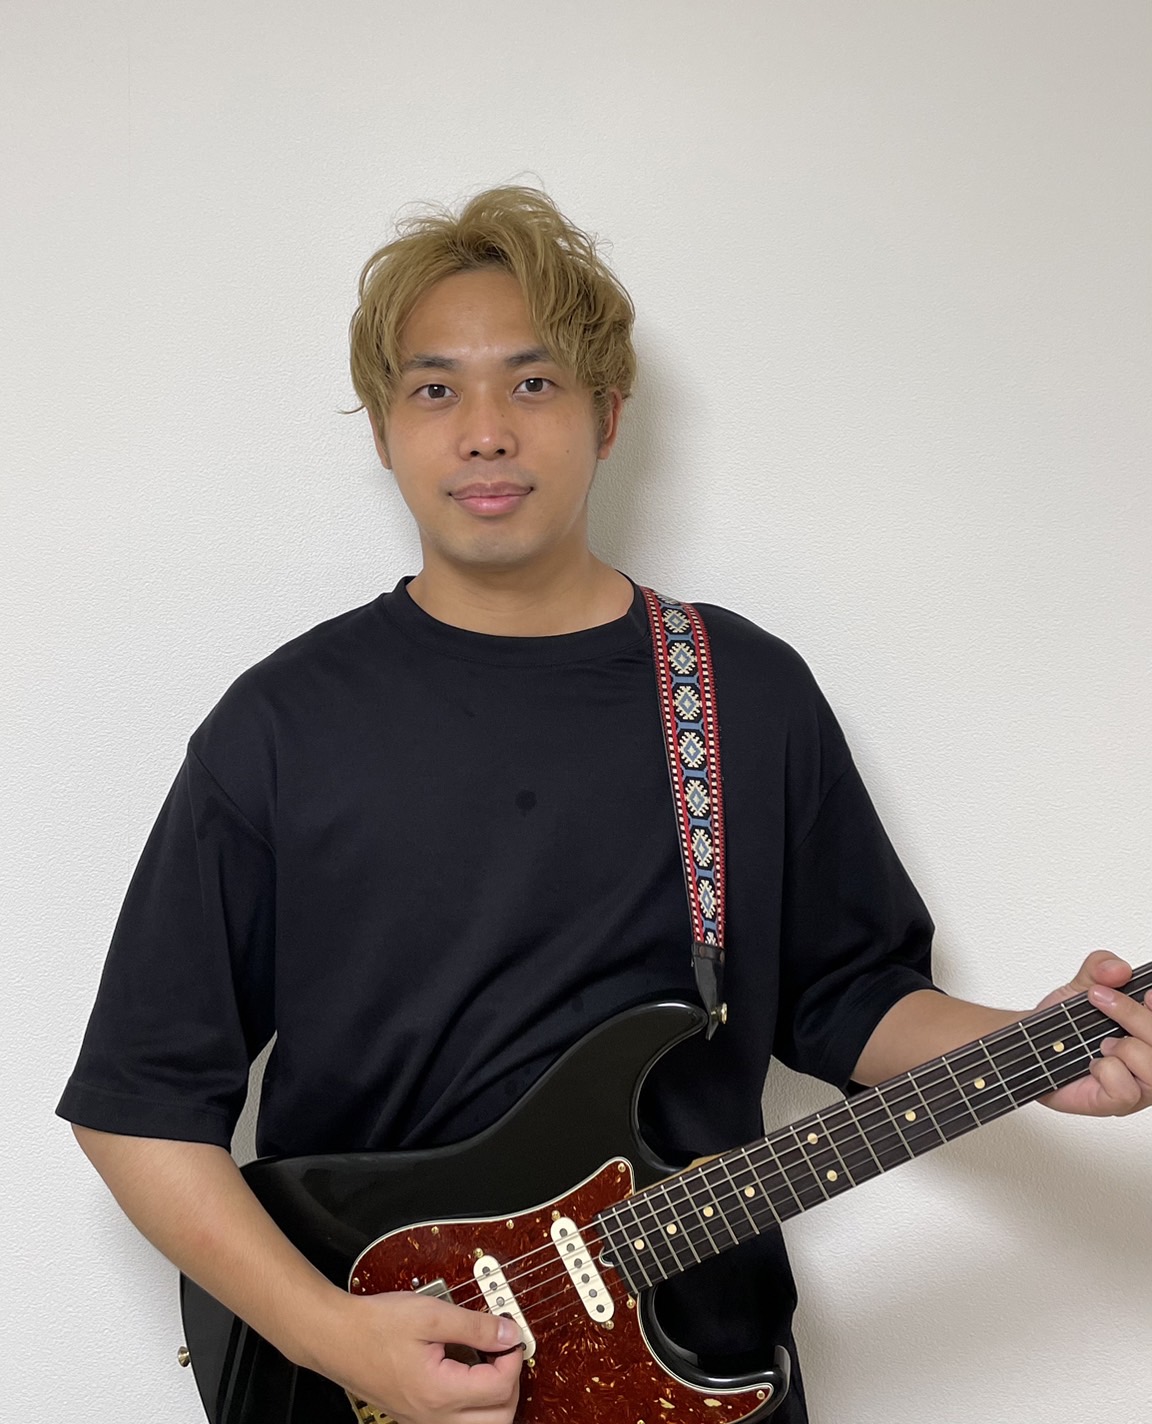 世田谷区三軒茶屋Miyakoda guitar schoolのギターレッスン担当講師遠藤タカヒロ